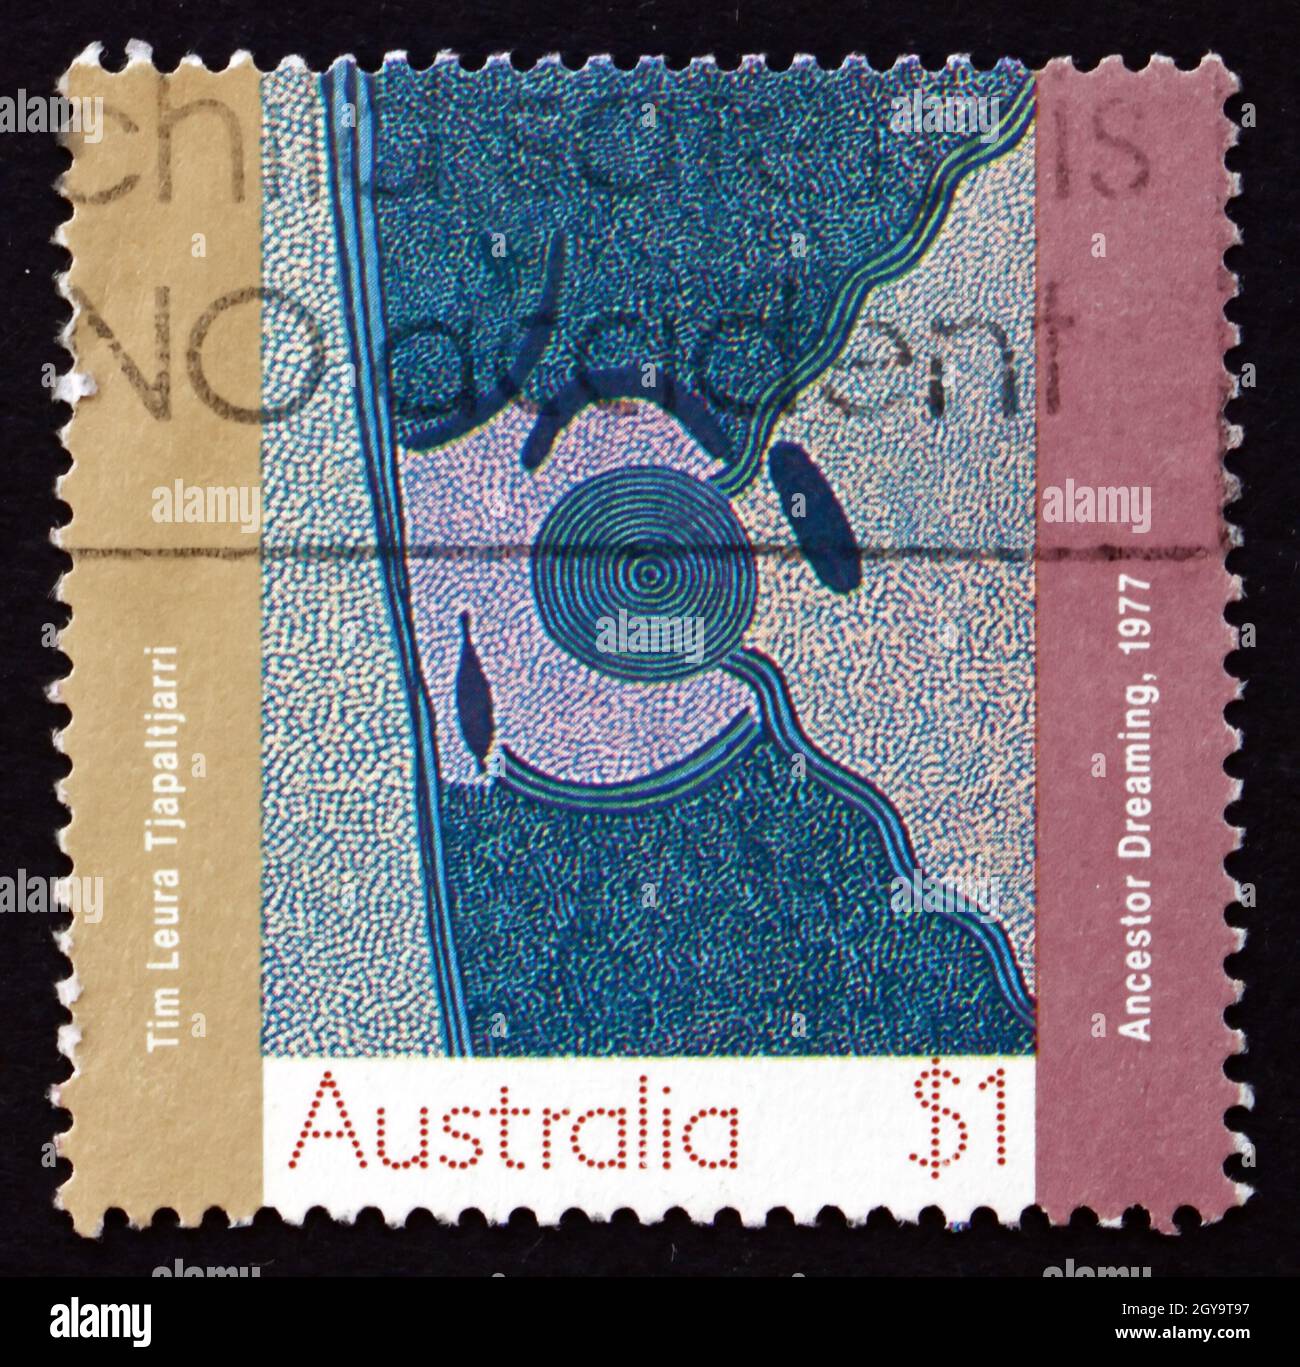 AUSTRALIE - VERS 1988 : un timbre imprimé en Australie montre un rêve ancestral, peinture aborigène de la colonie du Papunya, vers 1988 Banque D'Images